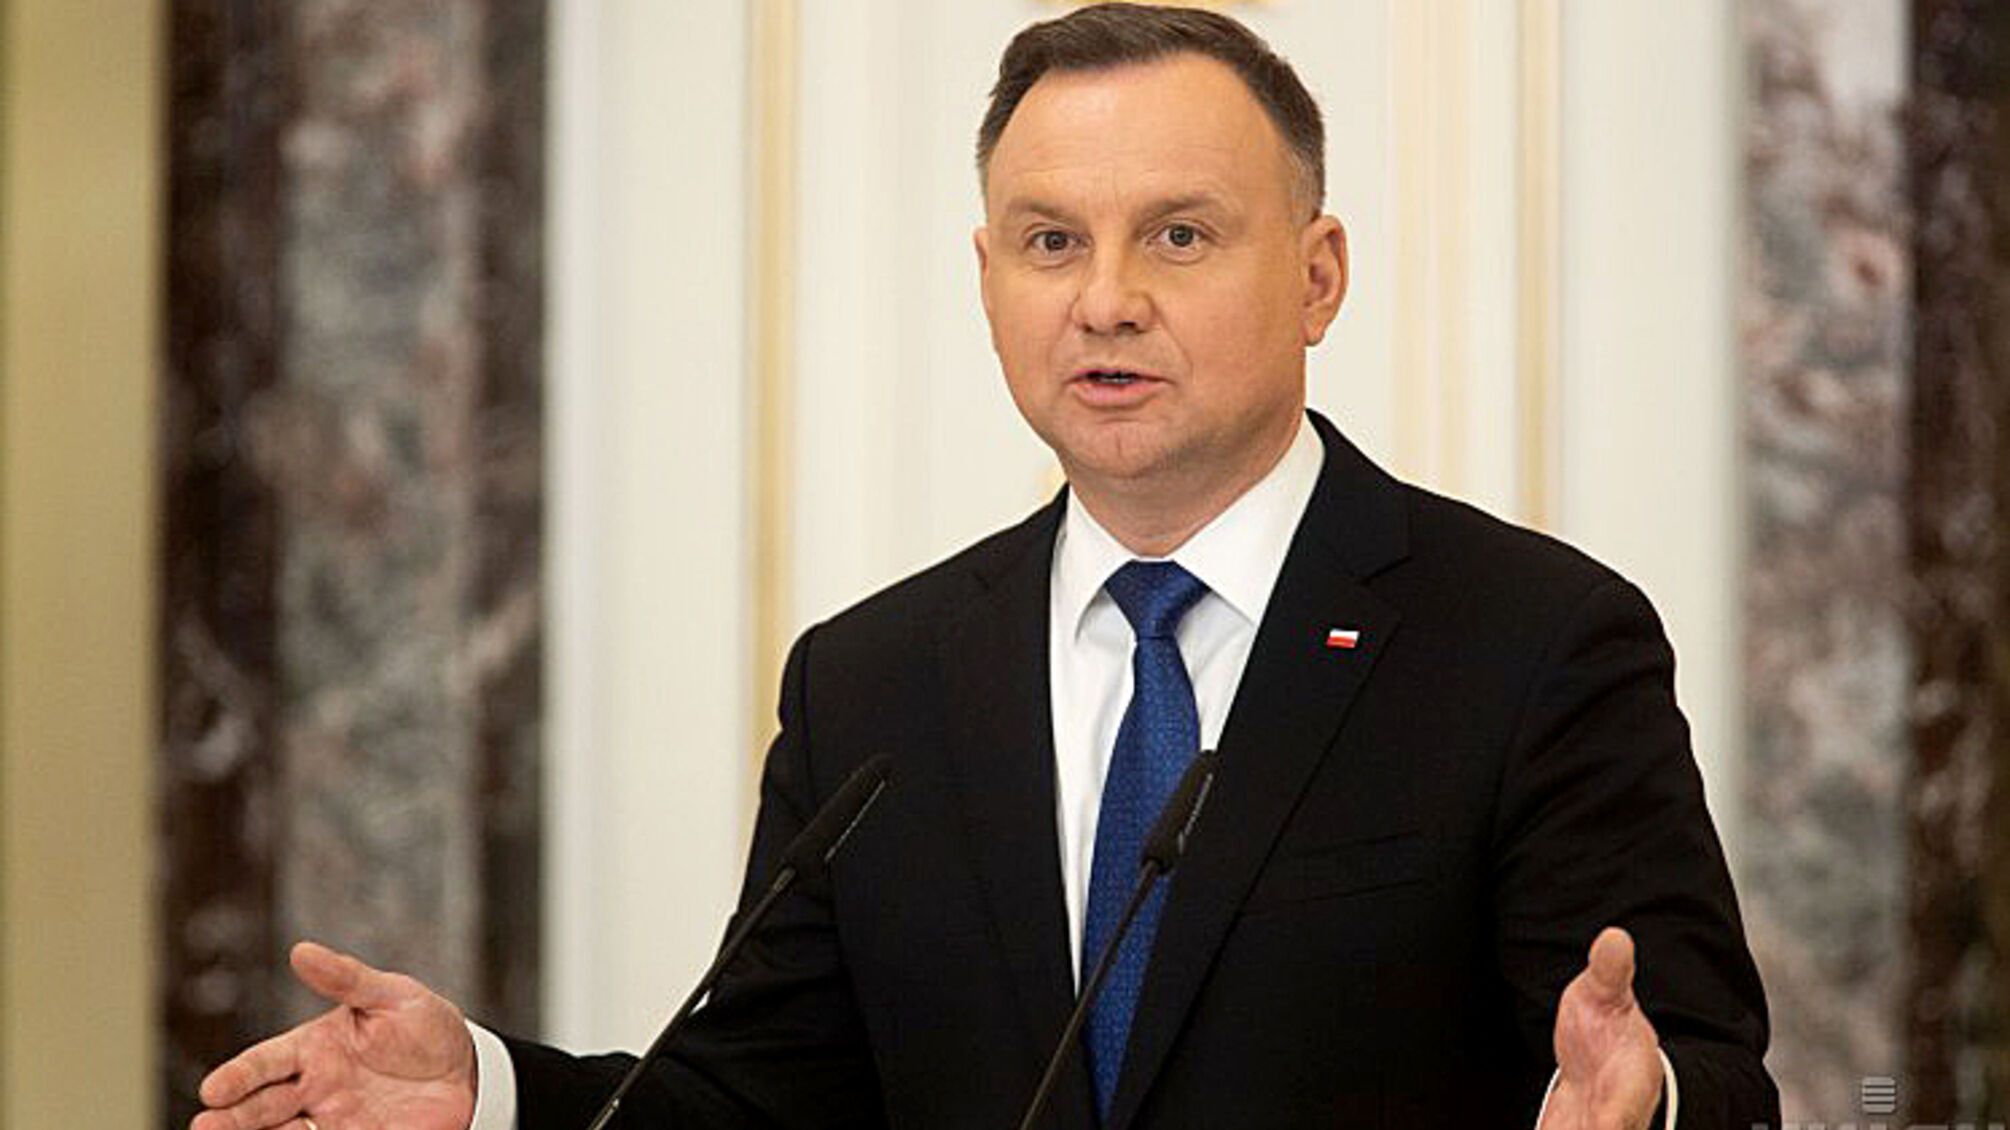 Польща продовжуватиме постачати Україні зброю, — президент Польщі Дуда